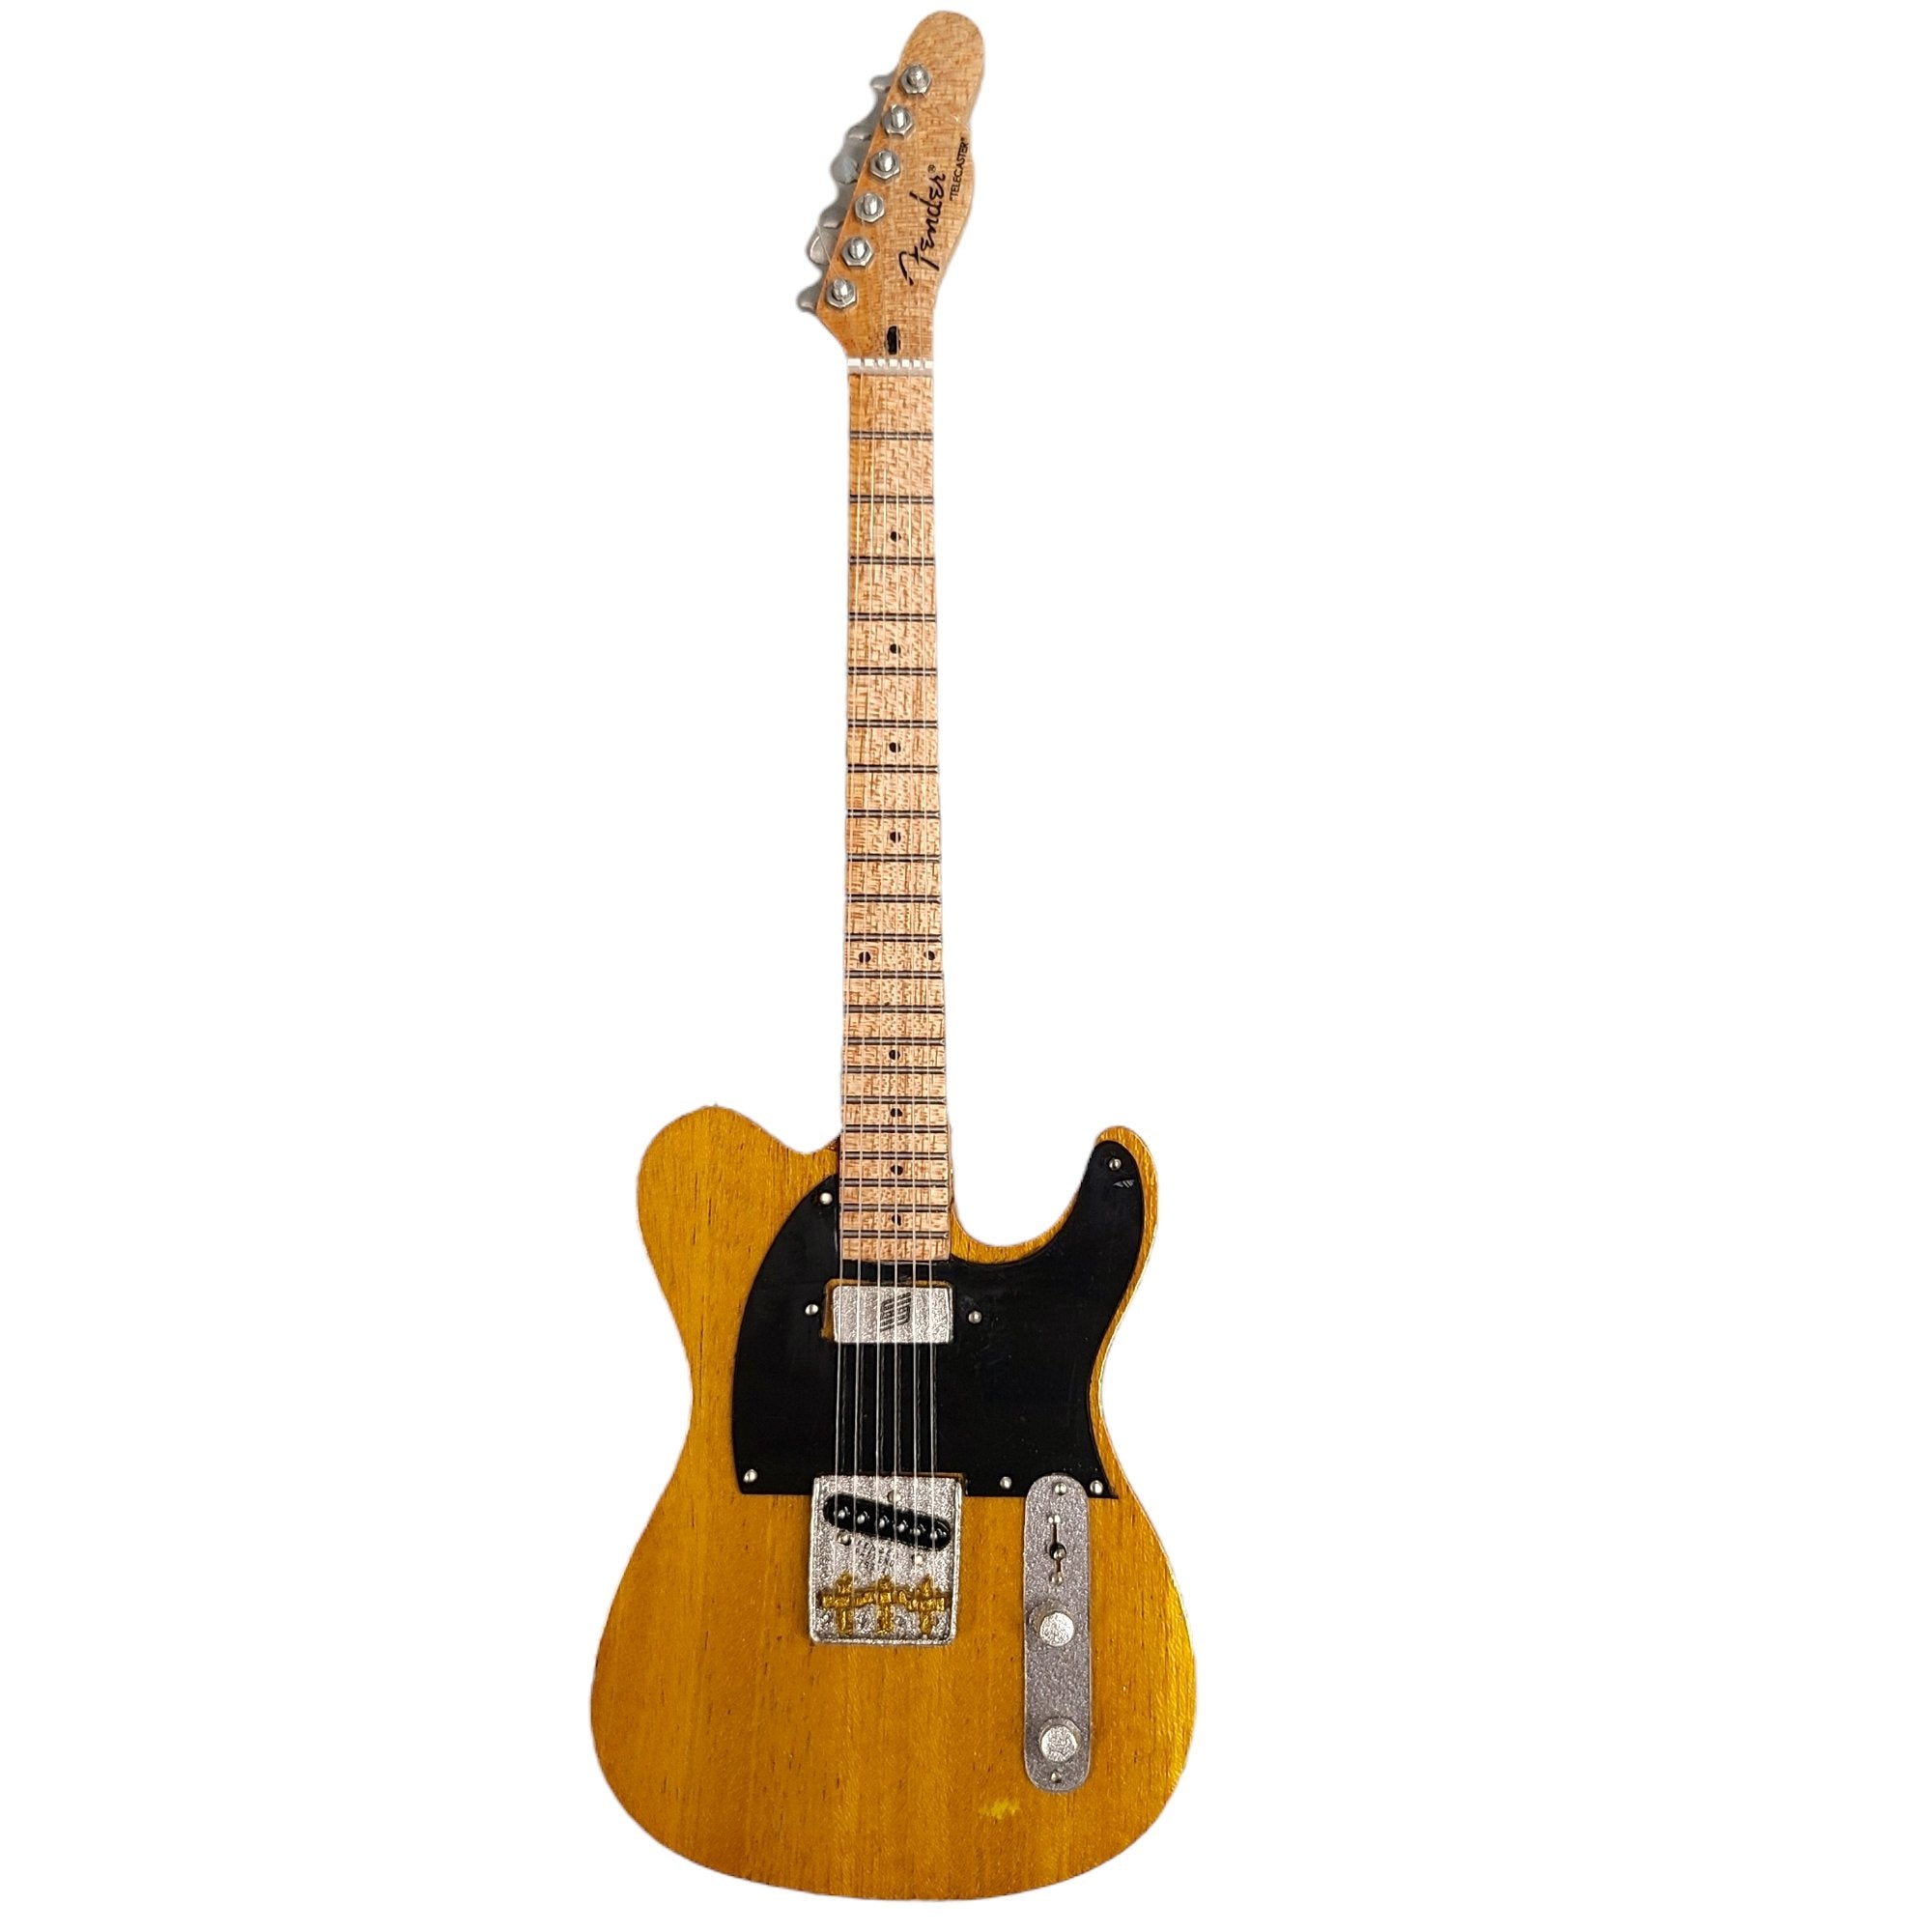 Axe Heaven Butterscotch Blonde Fender Telecaster Mini Guitar